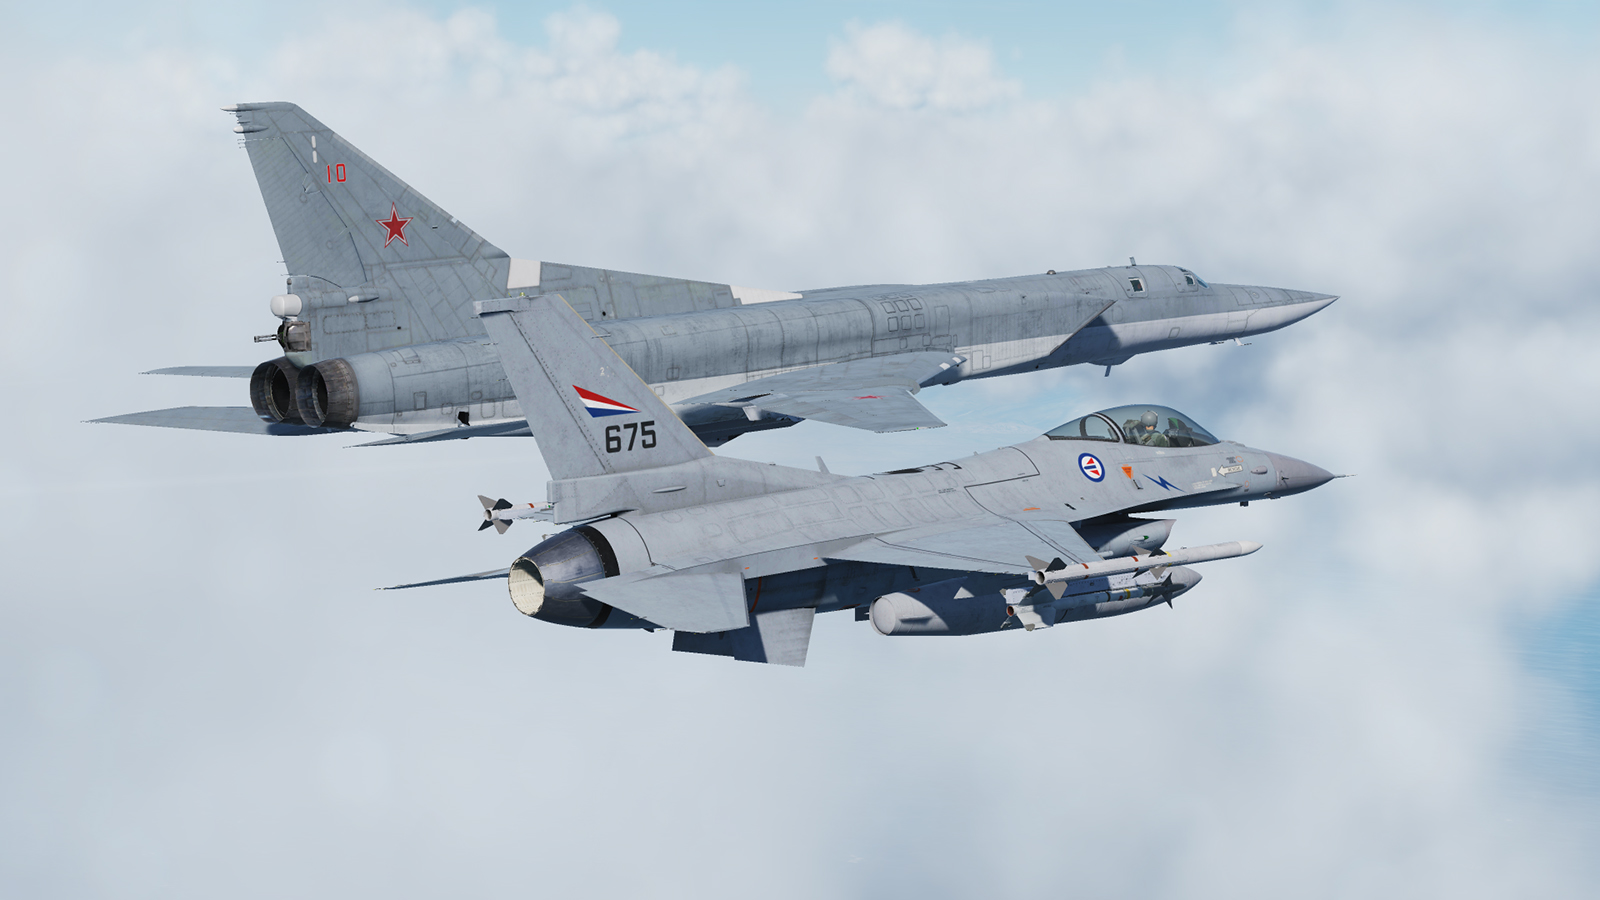 F-16C - RNoAF - 675 - 331 sqn